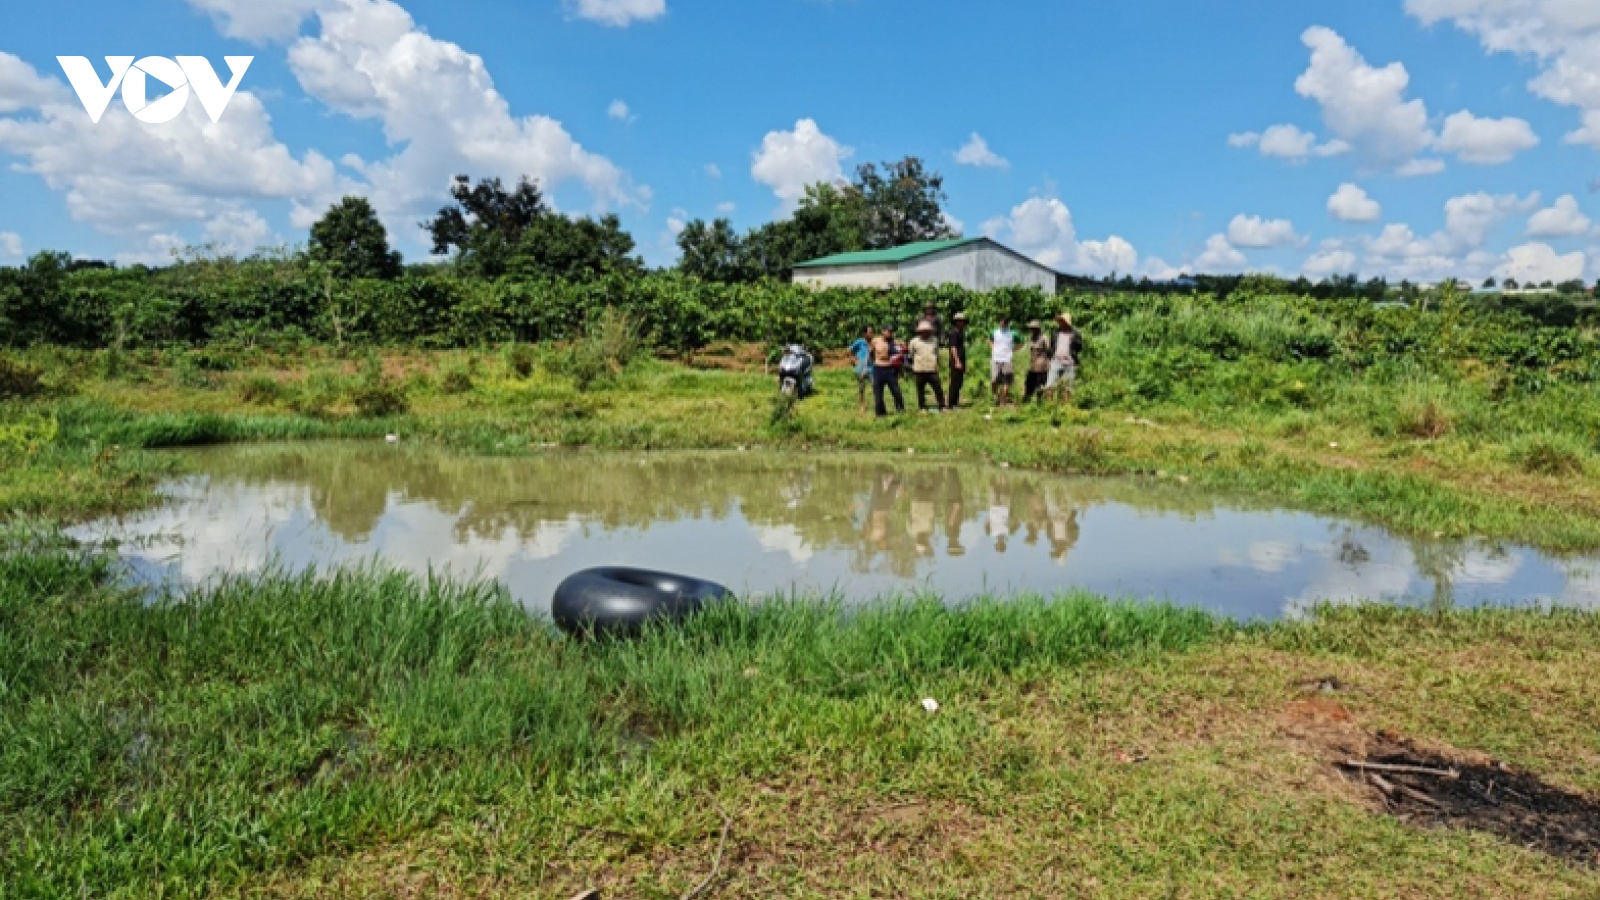 5 thiếu niên ở Gia Lai rủ nhau tắm hồ, 2 em đuối nước thương tâm